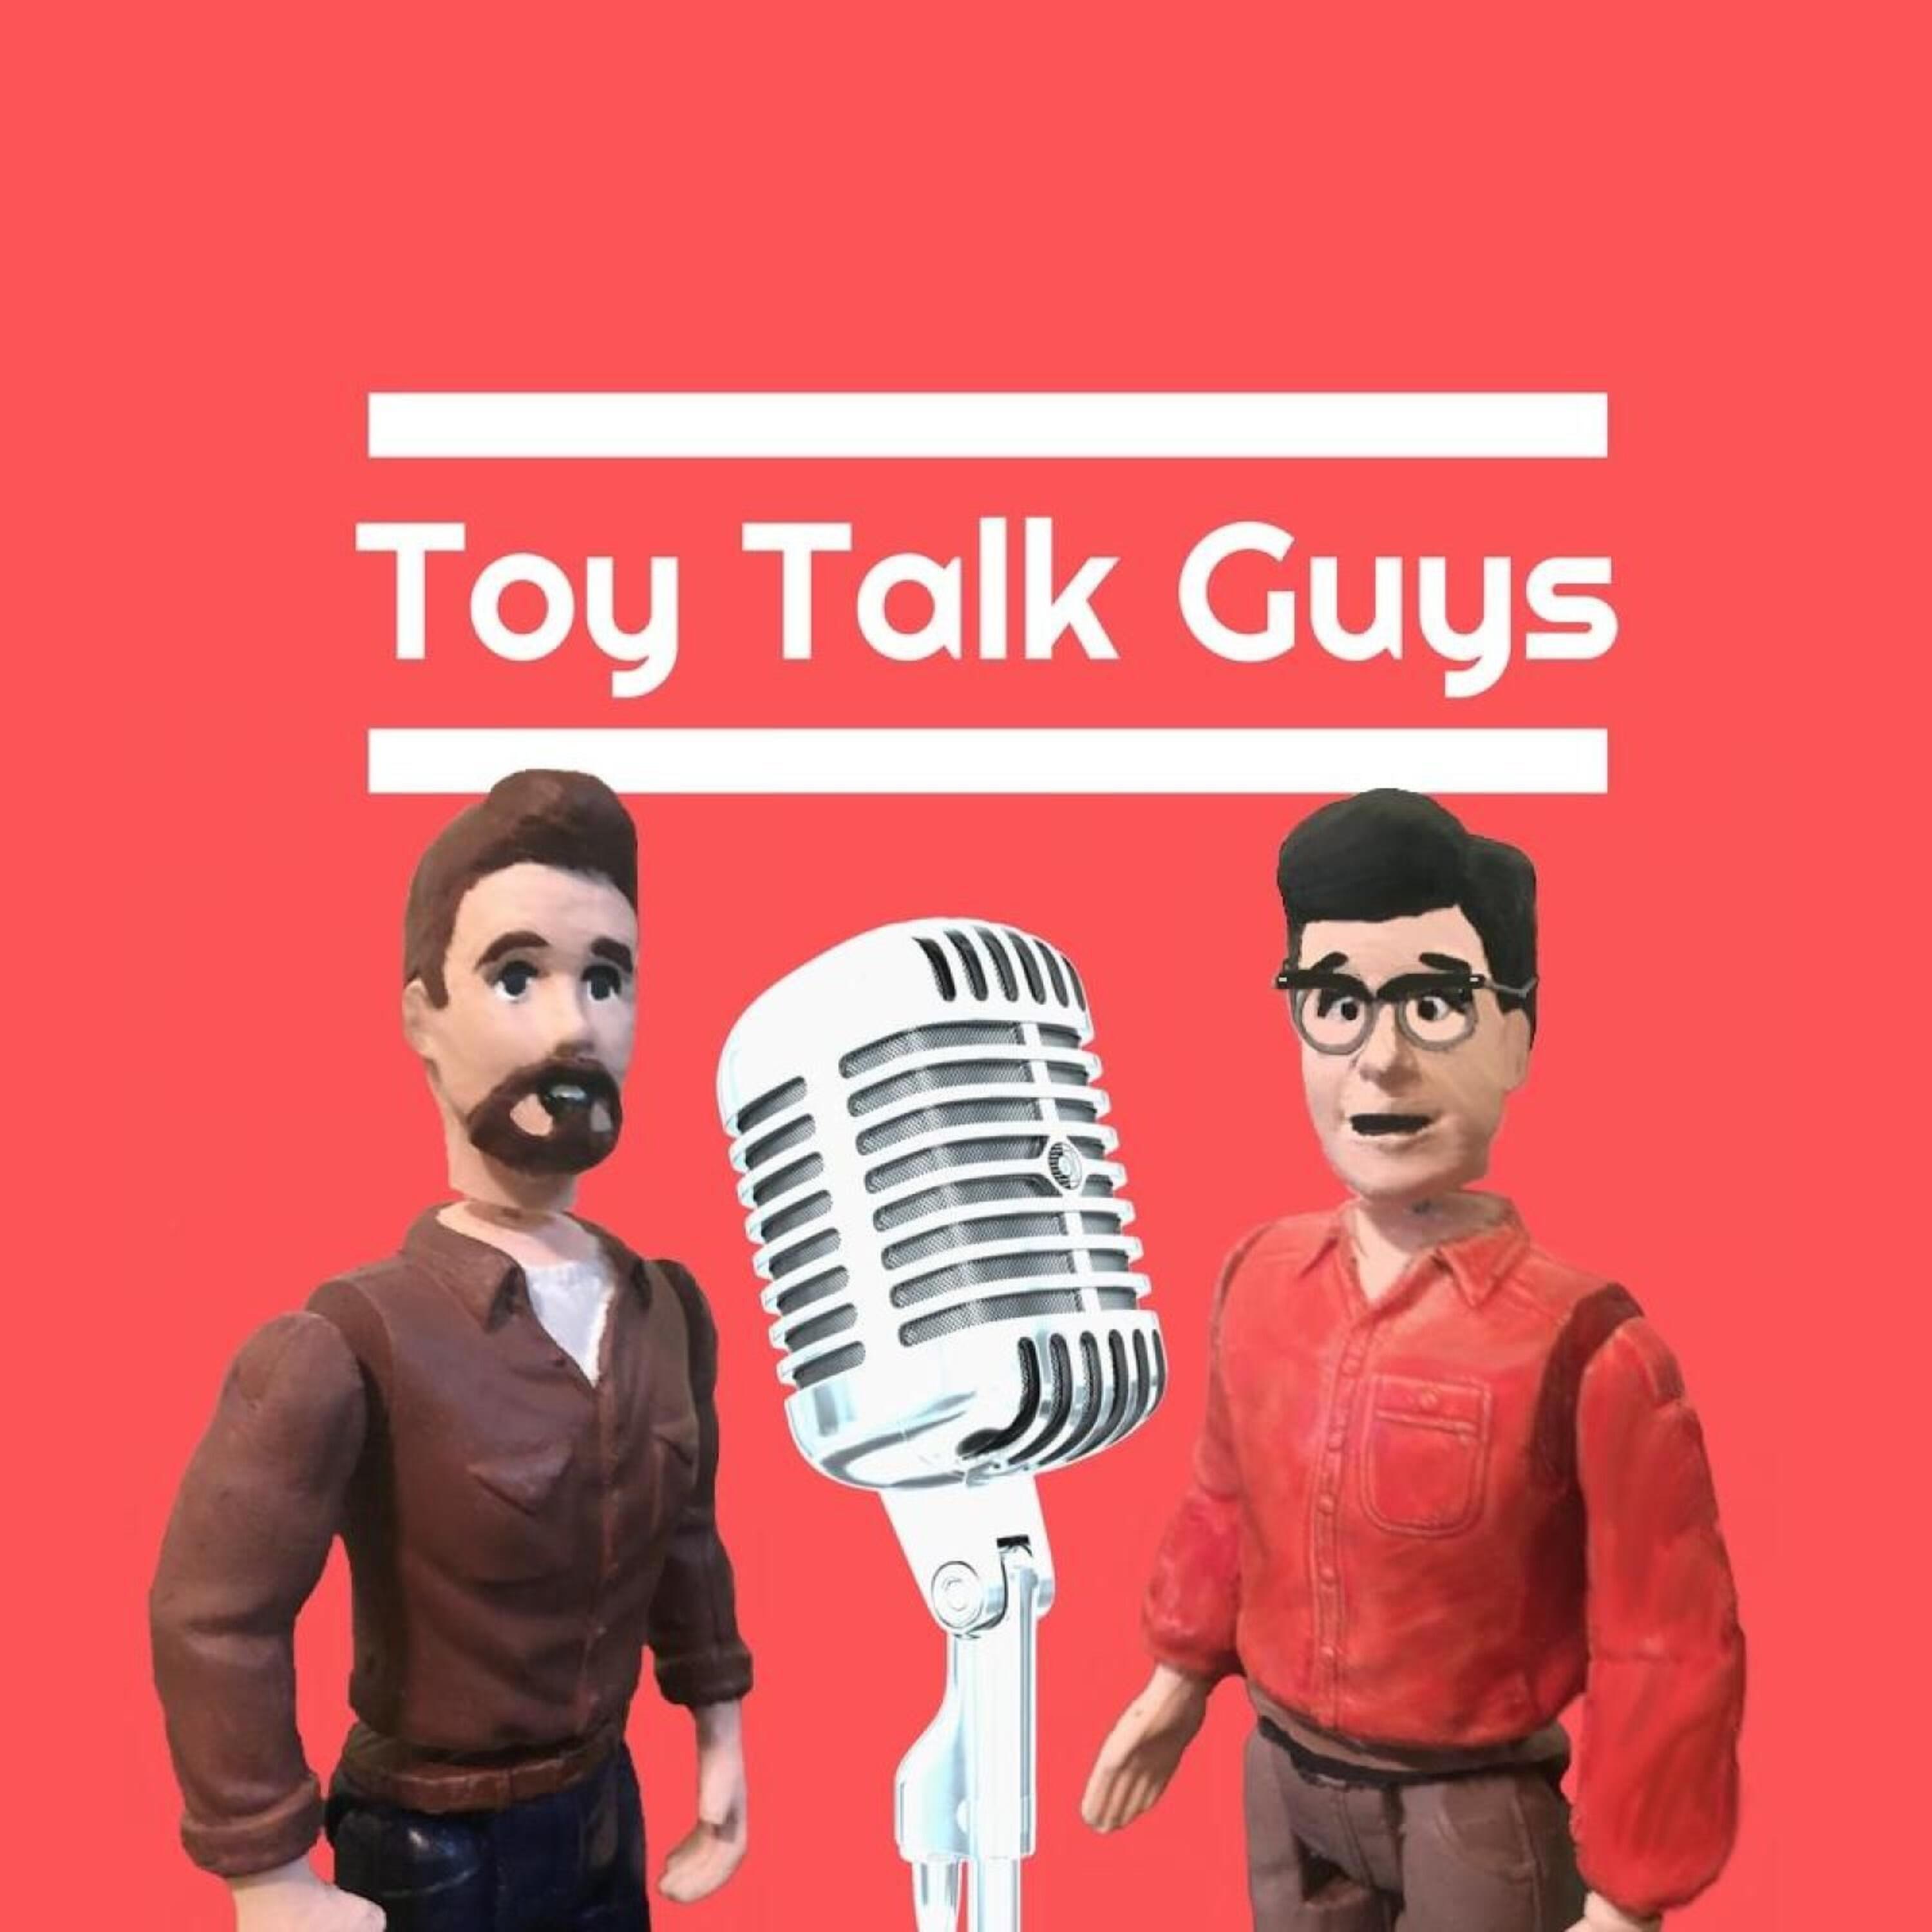 The Toy мероприятия. Toy. Toy talk